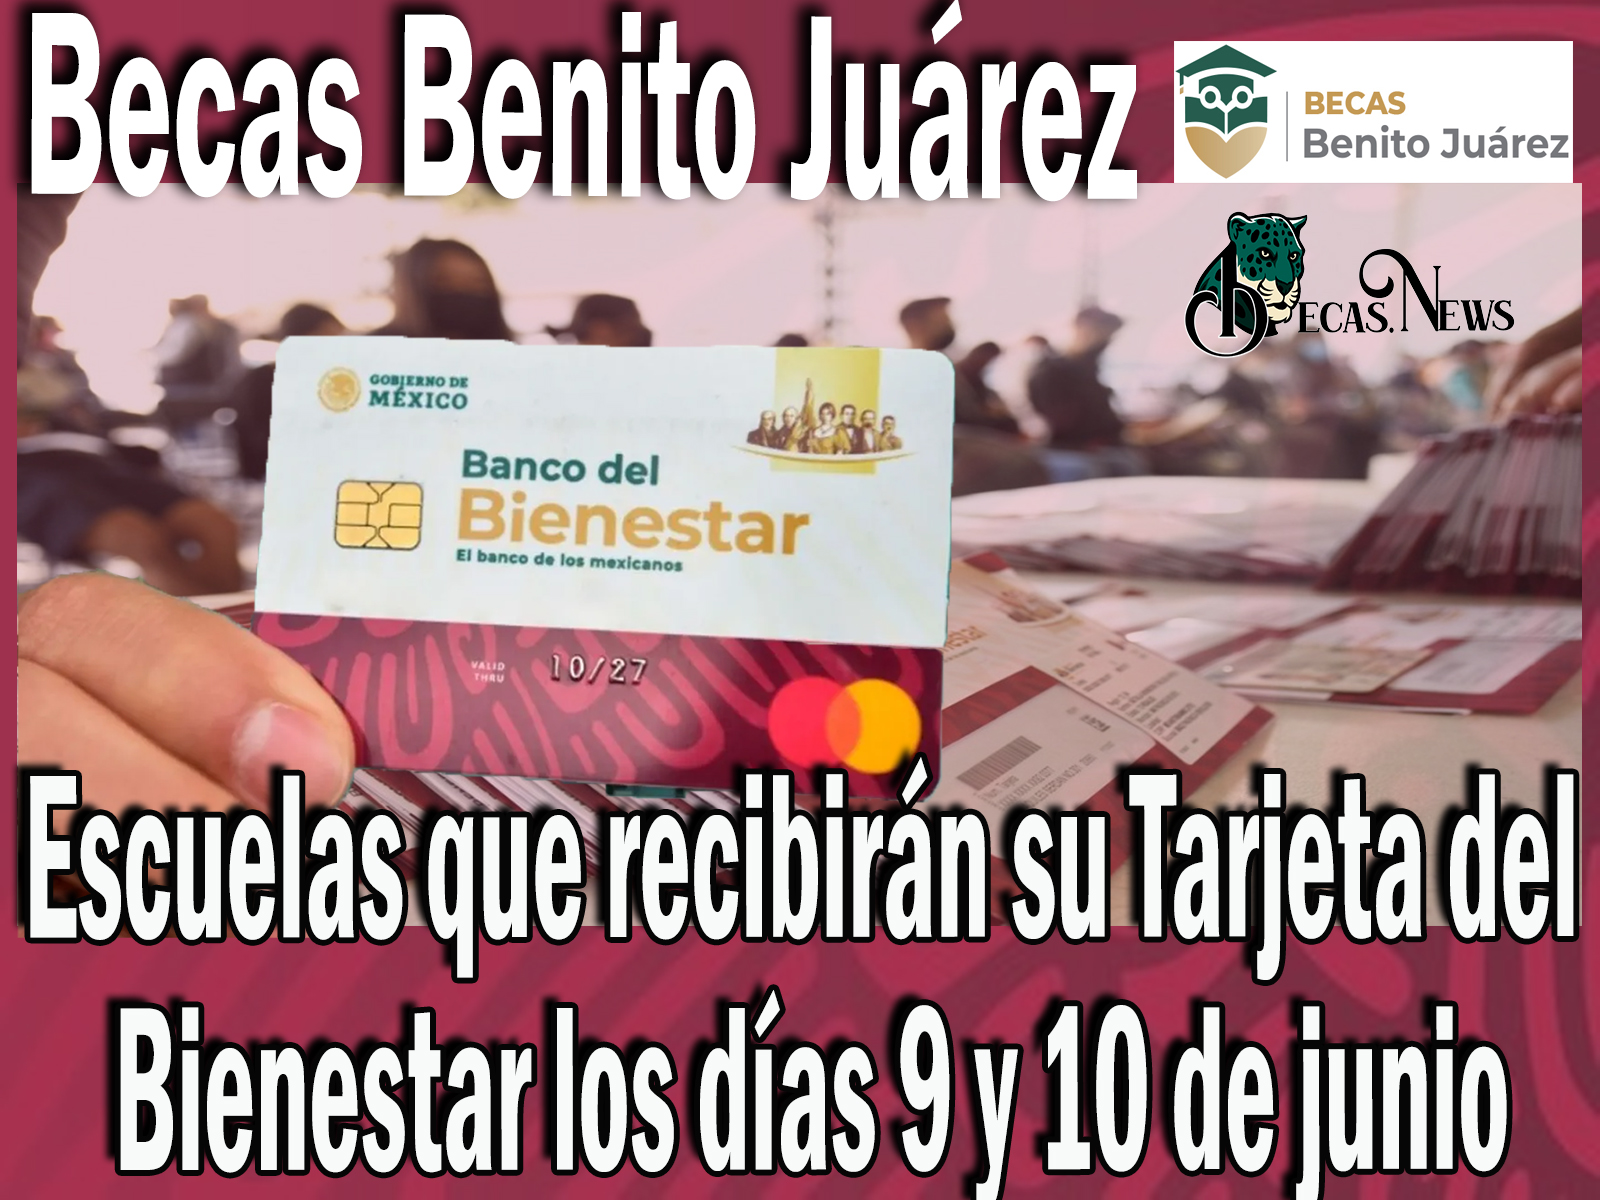 Becas Benito Juárez: Escuelas que recibirán su Tarjeta del Bienestar los días 9 y 10 de junio